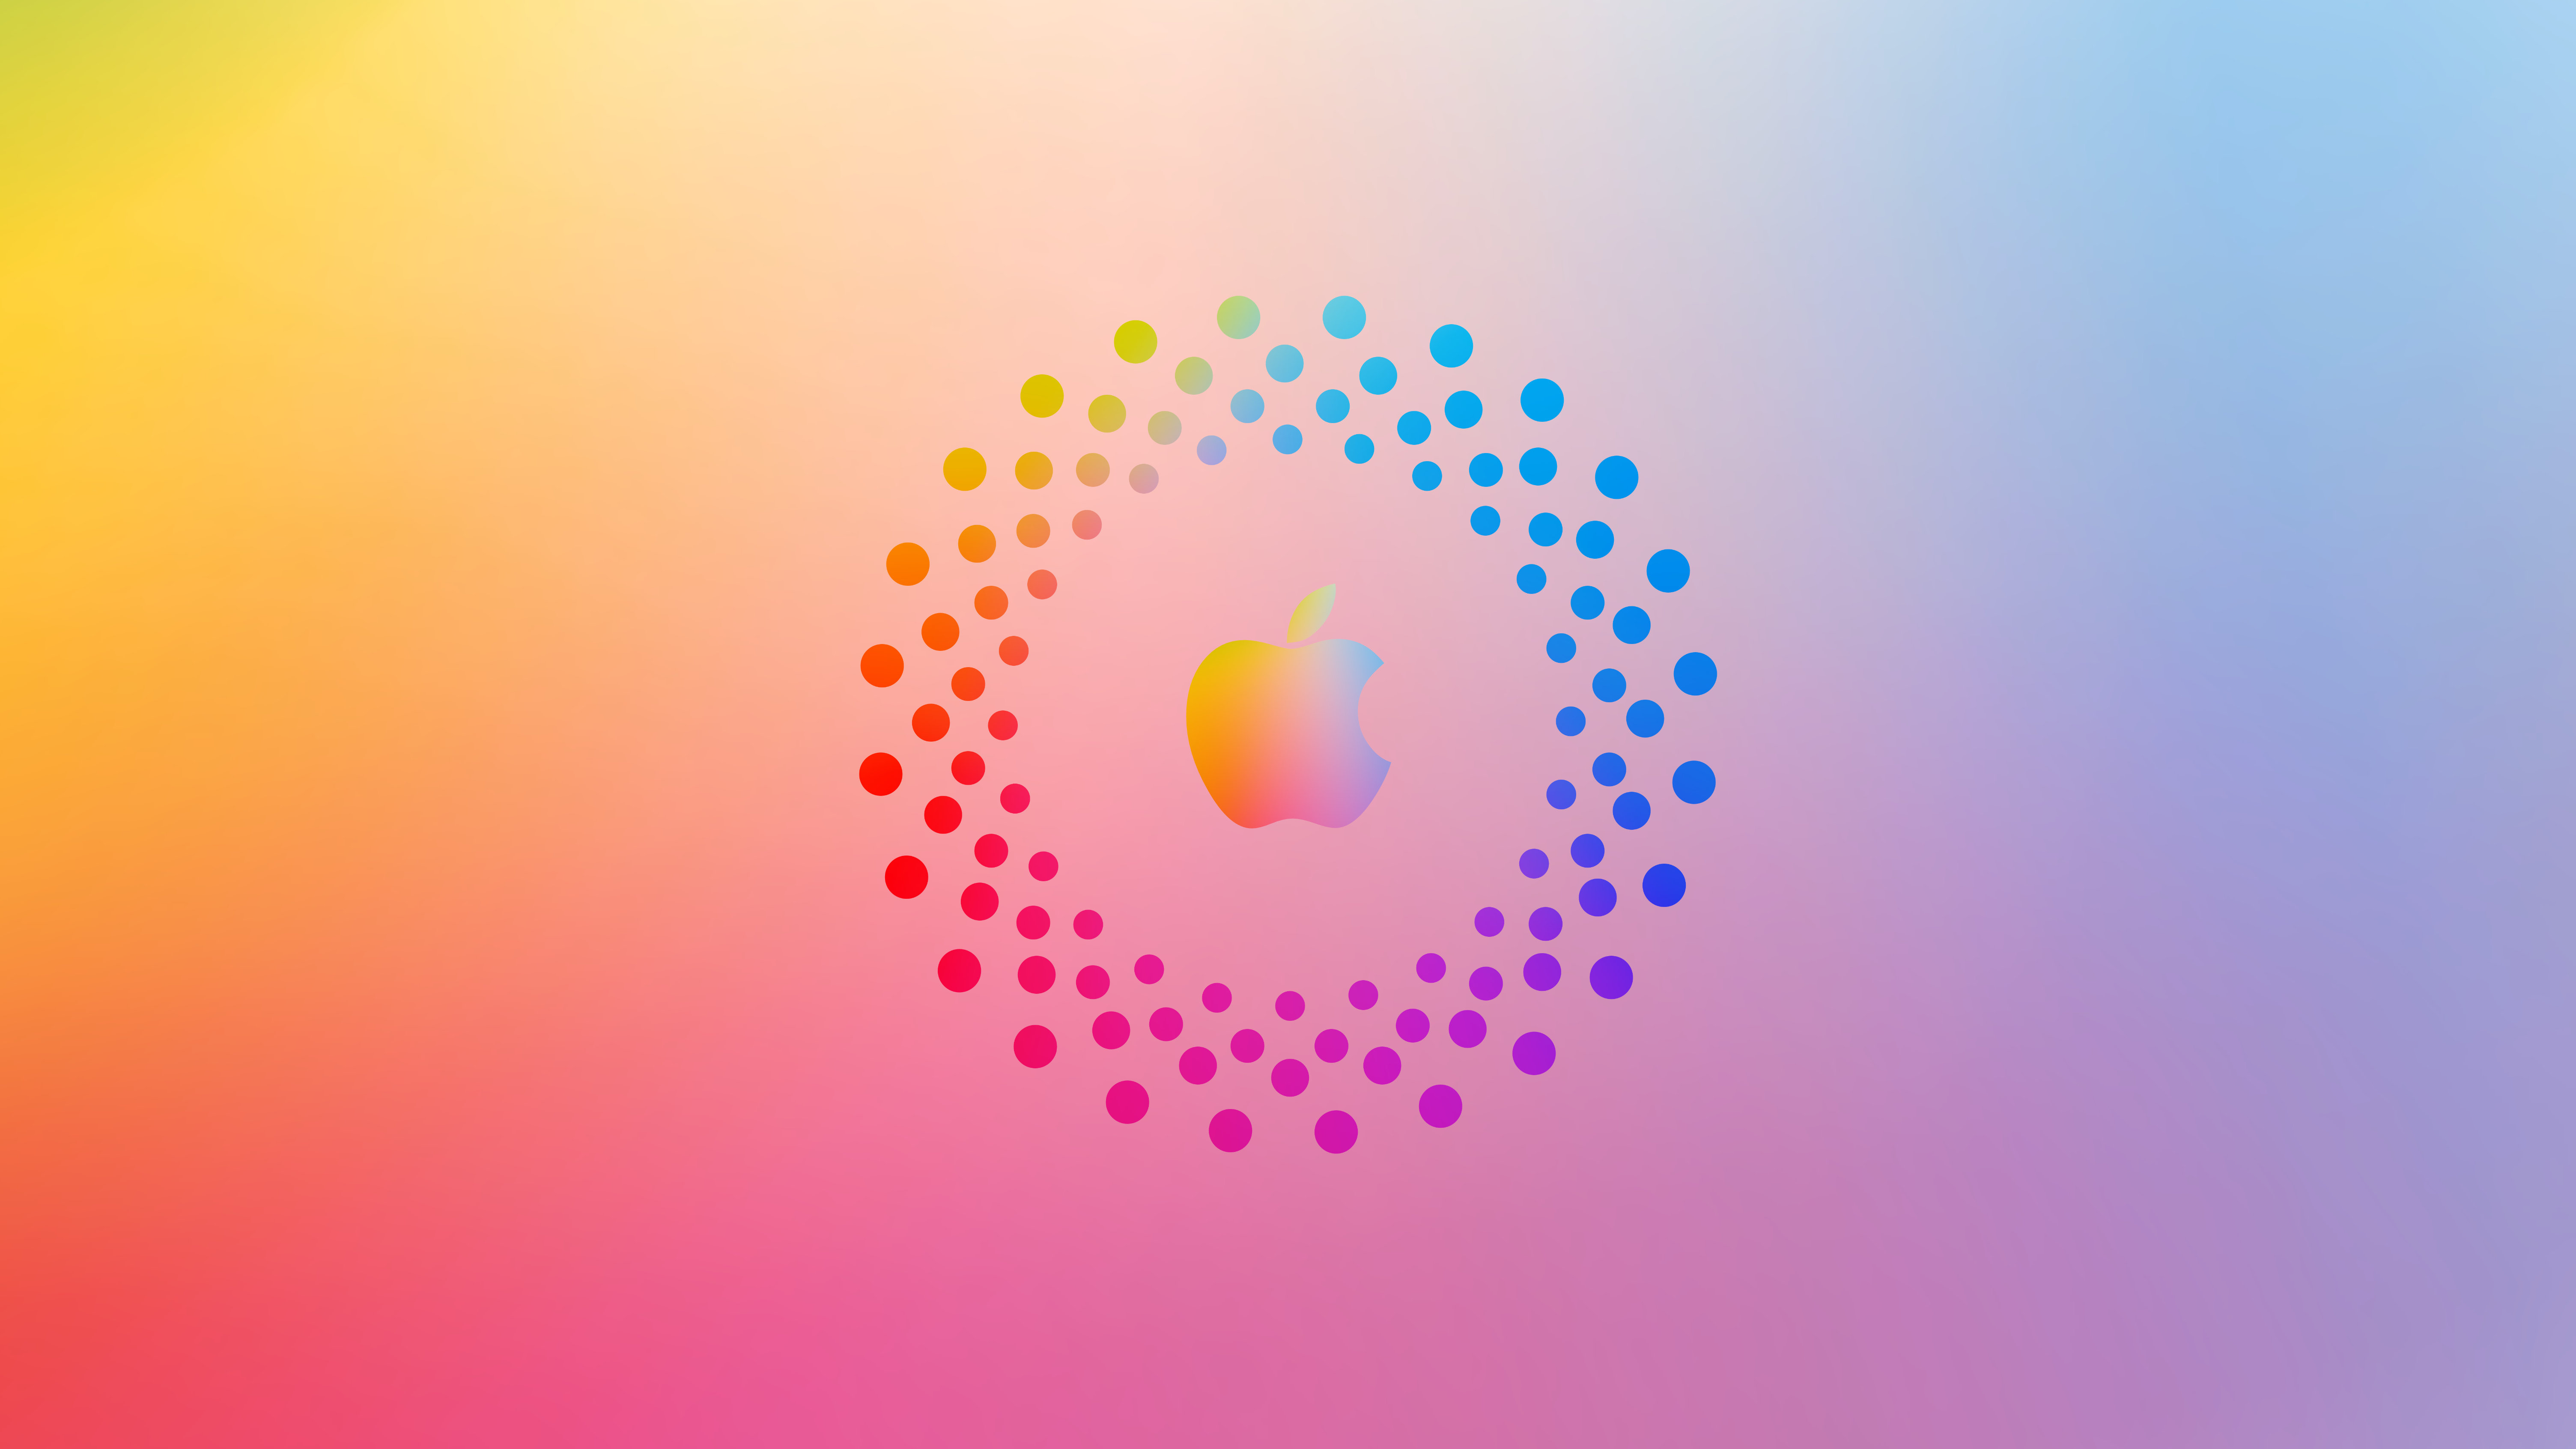 hd wallpaper apple logo